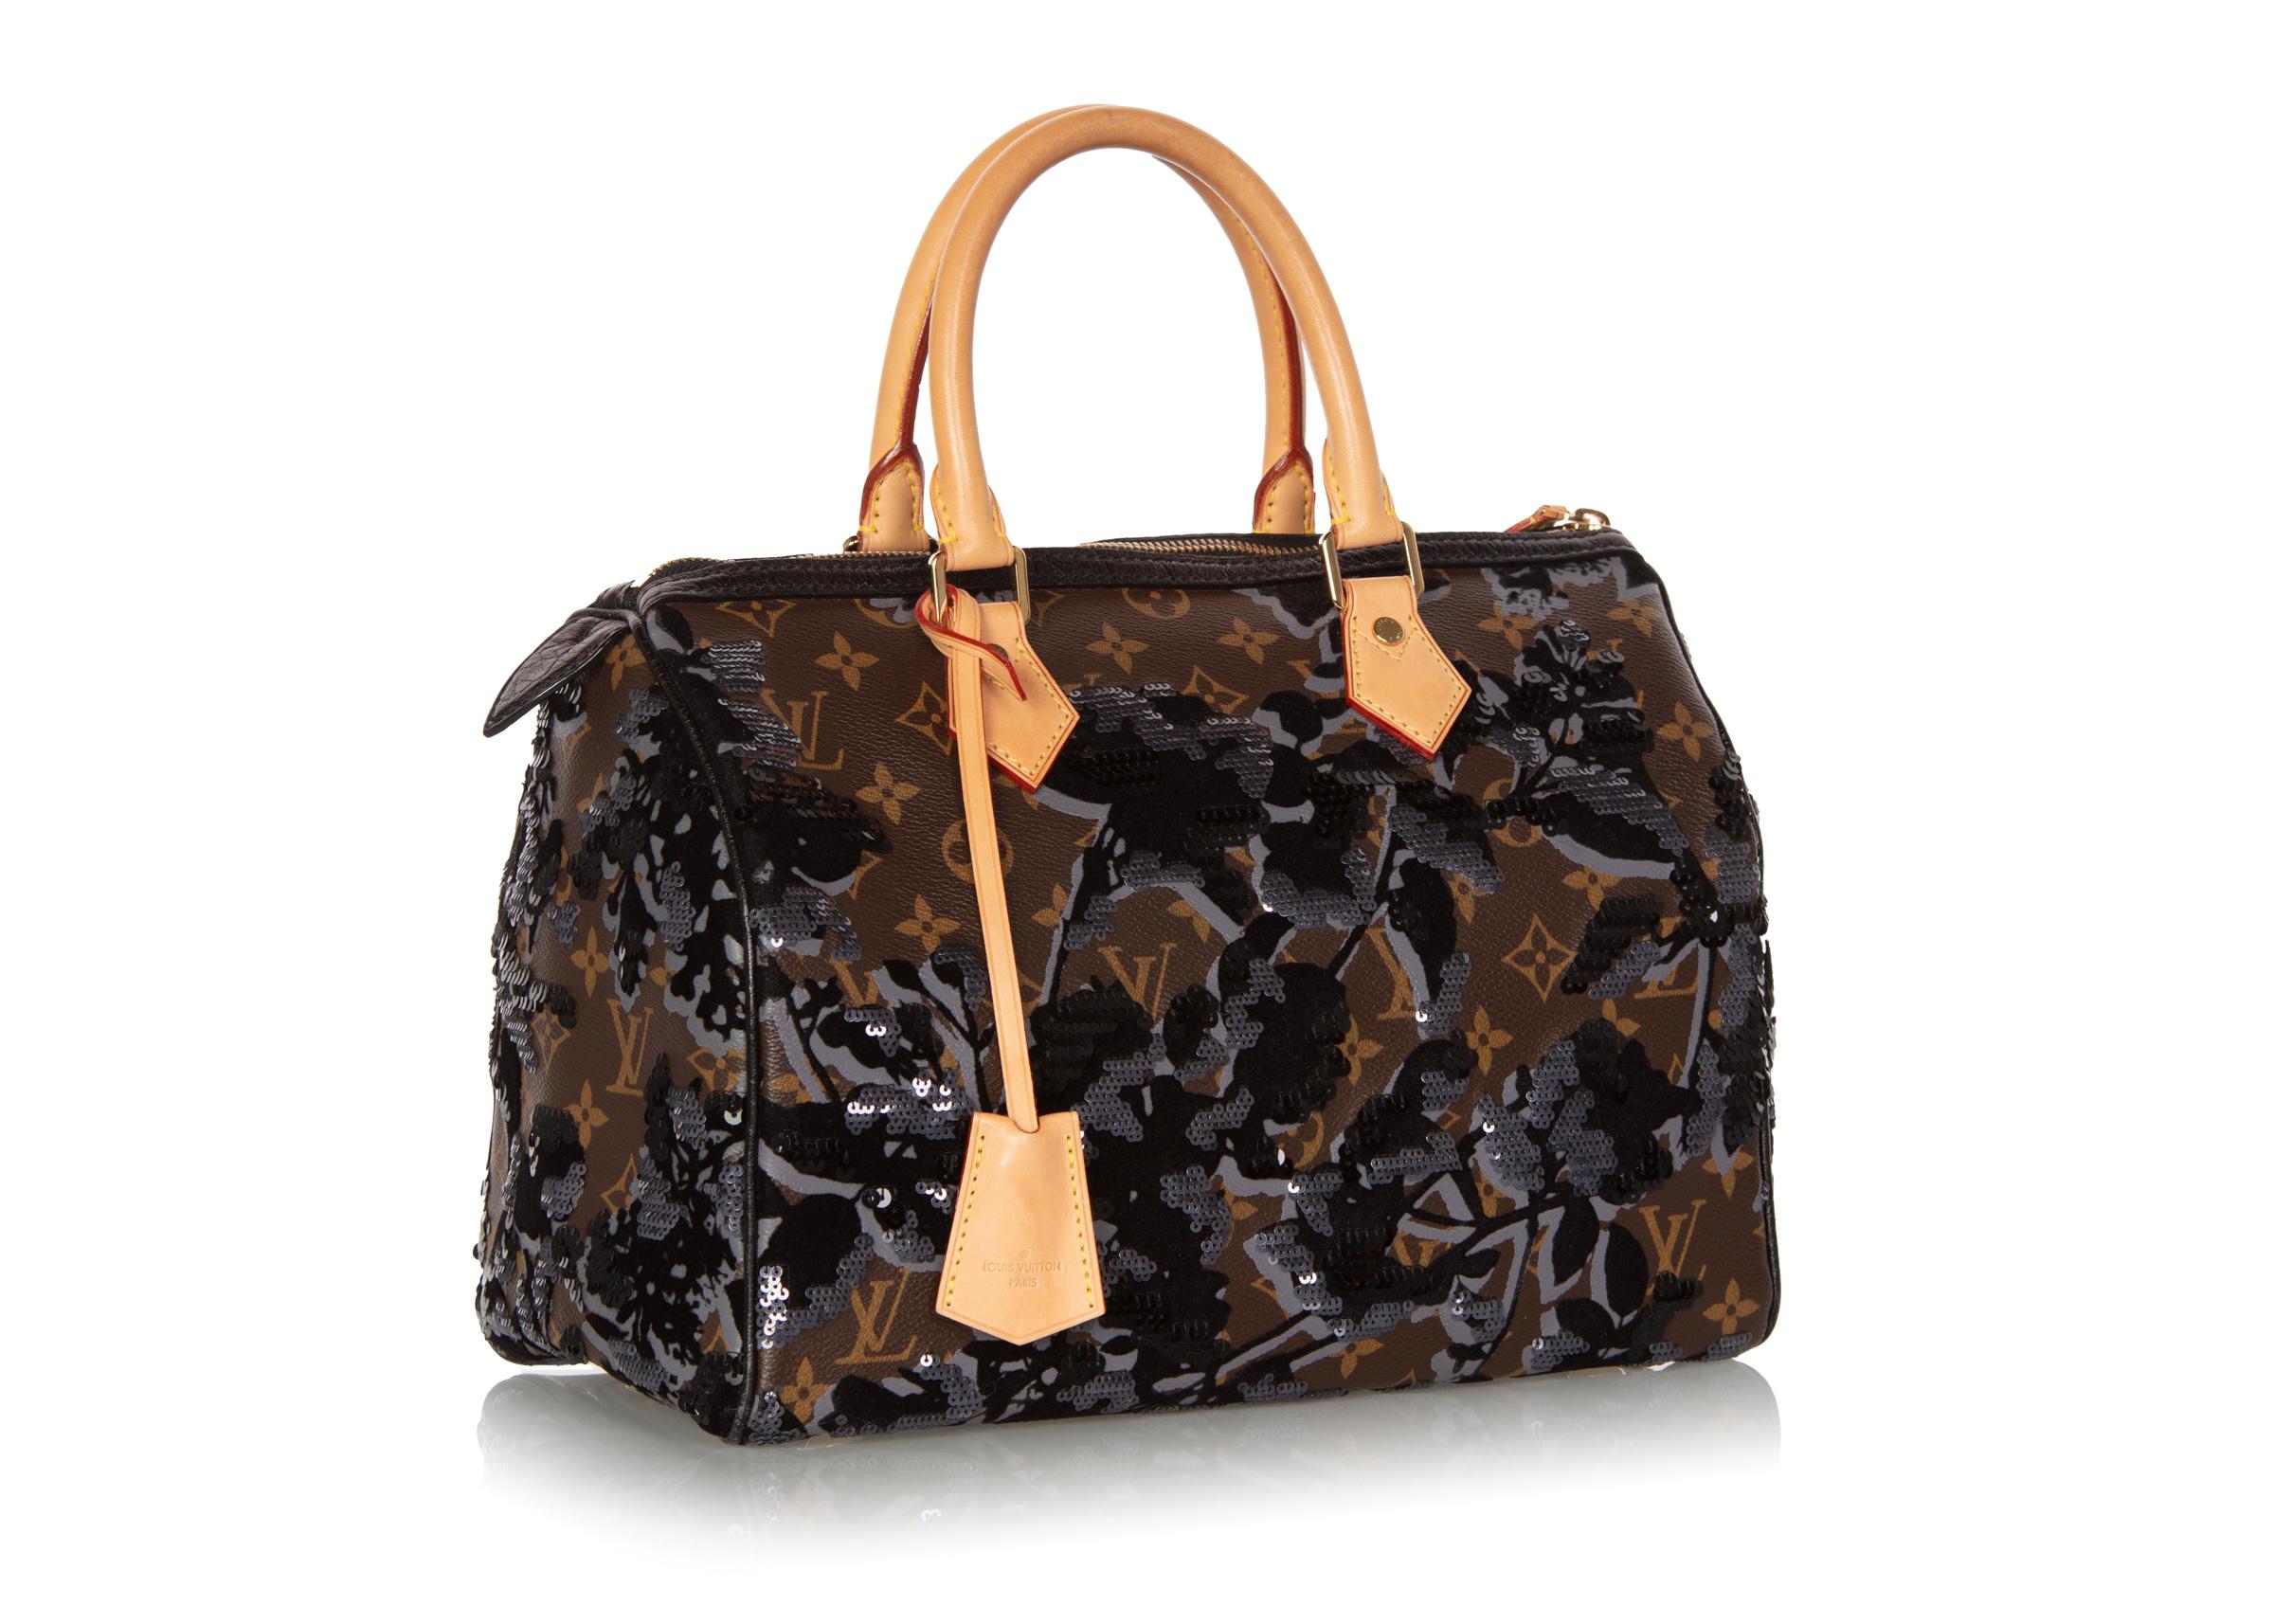 Black Louis Vuitton Limited Edition Fleur de Jais Monogram Speedy 30 Bag